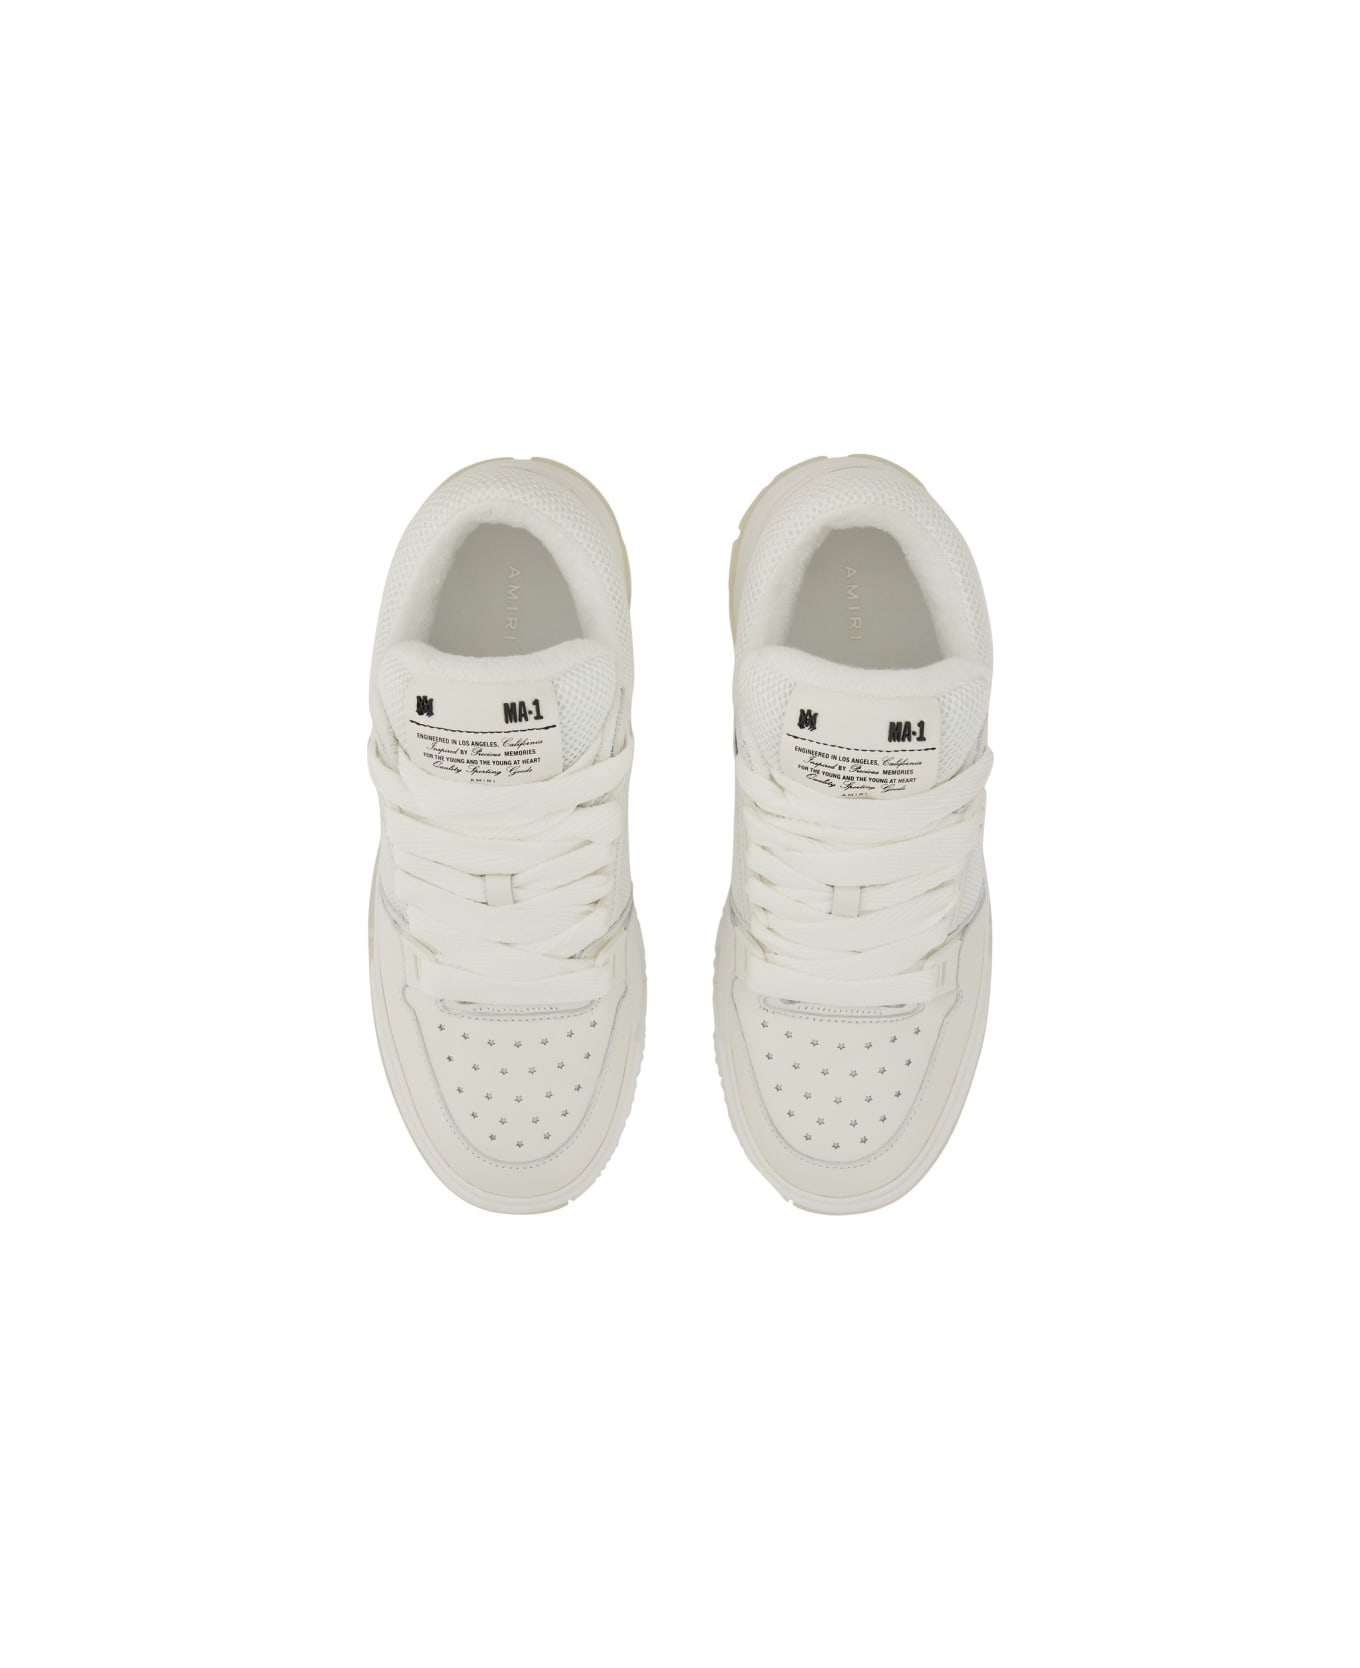 AMIRI Sneaker "ma-1" - WHITE スニーカー